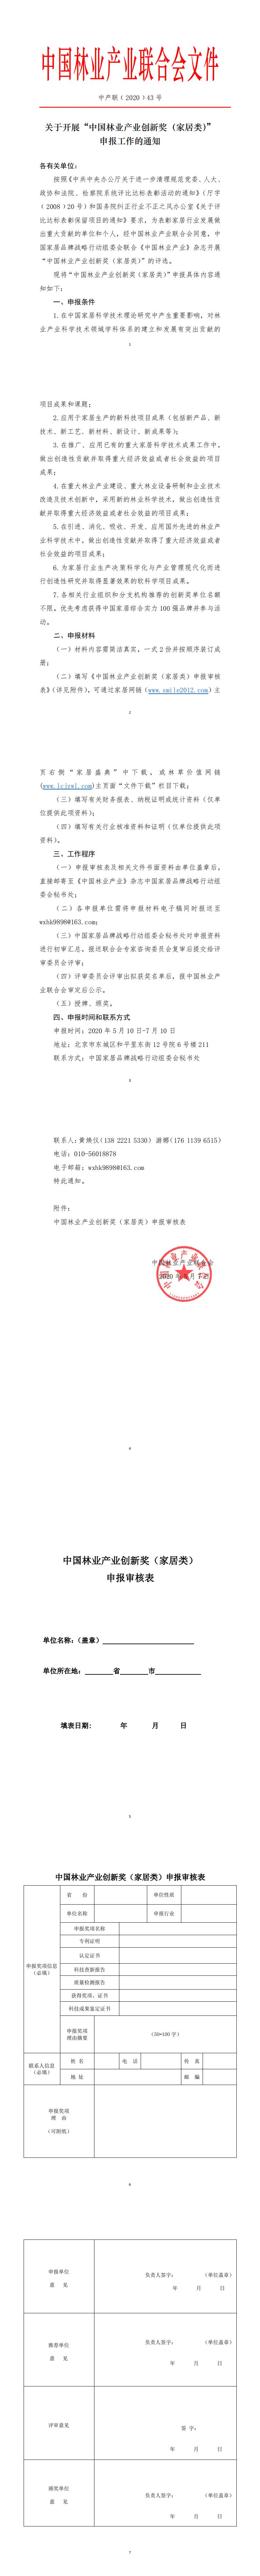 关于开展“中国林业产业创新奖（家居类）”申报工作的通知_0.jpg